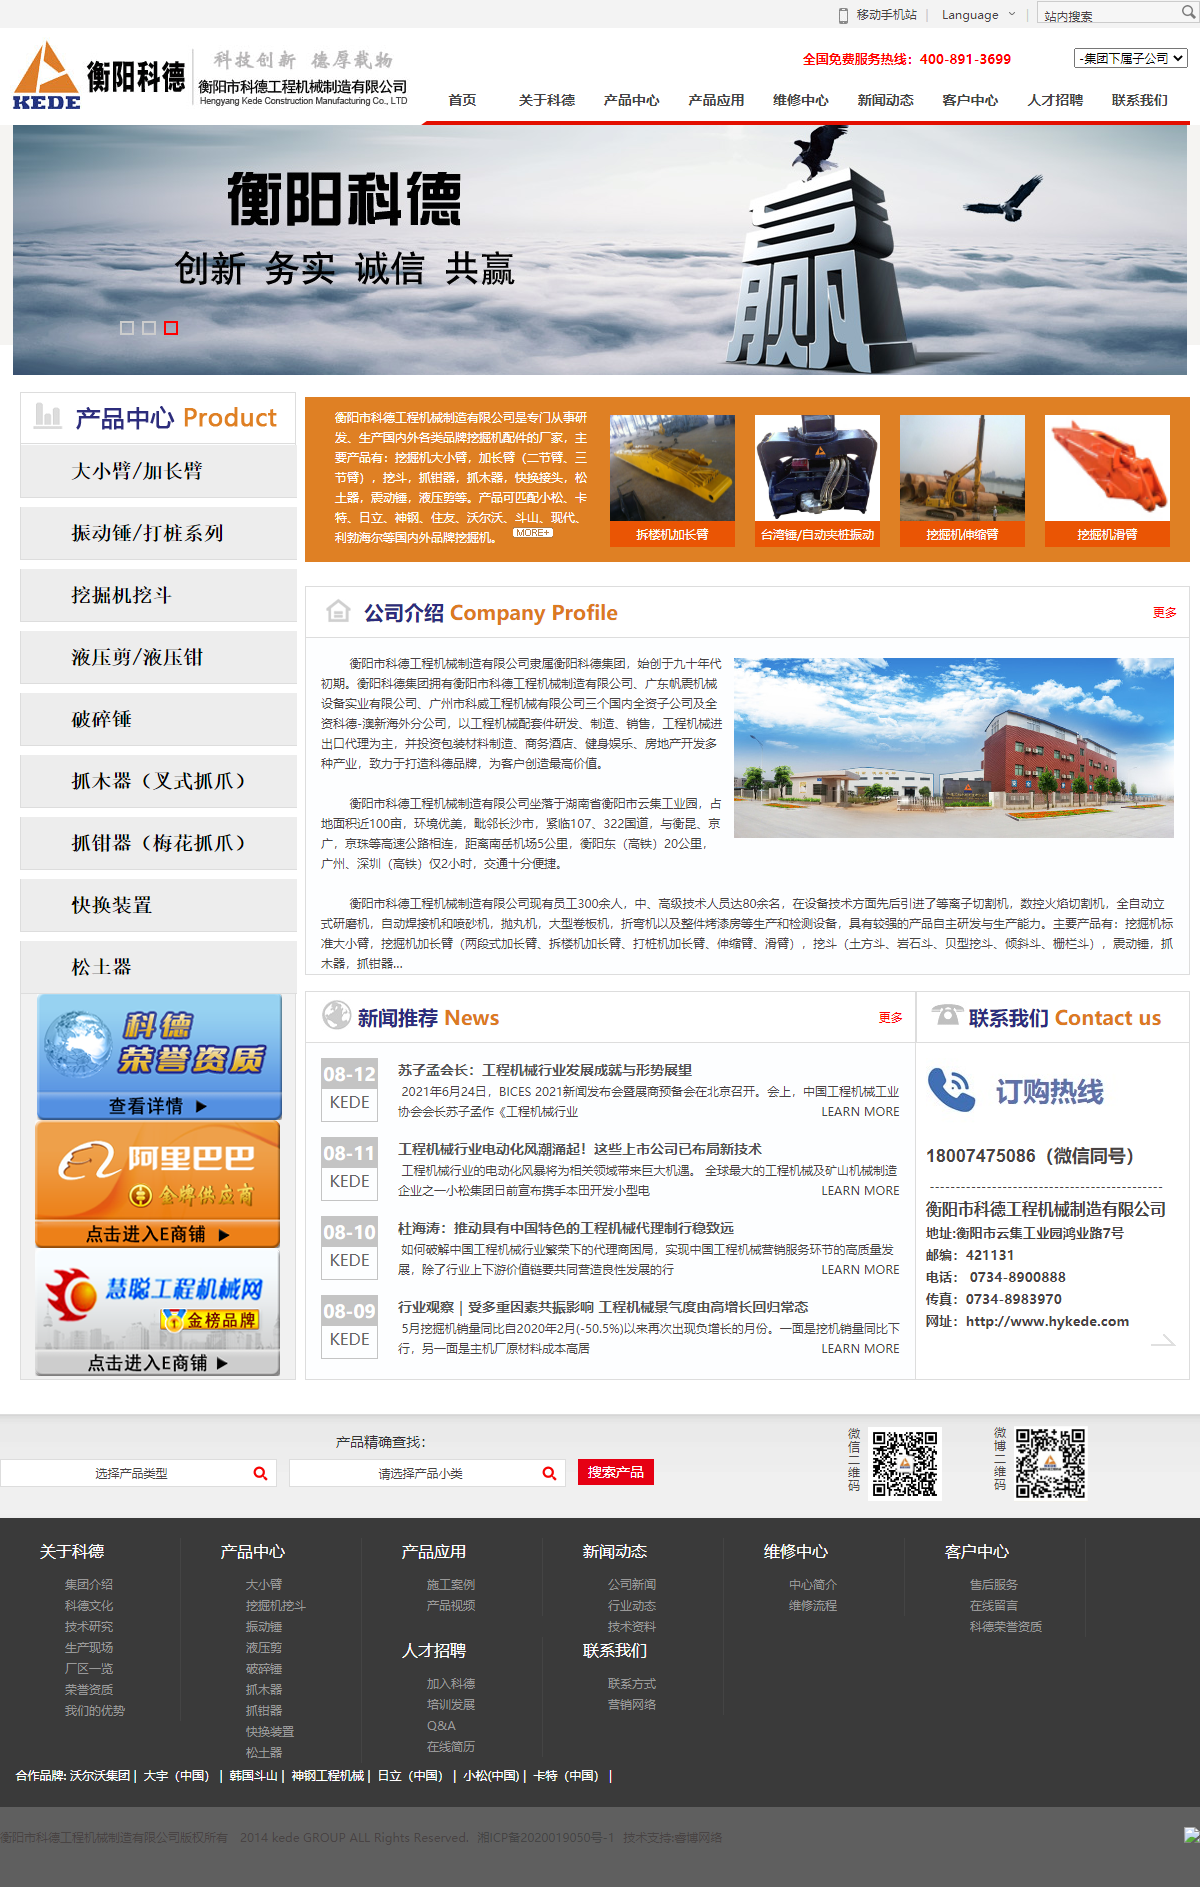 衡阳市科德工程机械制造有限公司网站案例